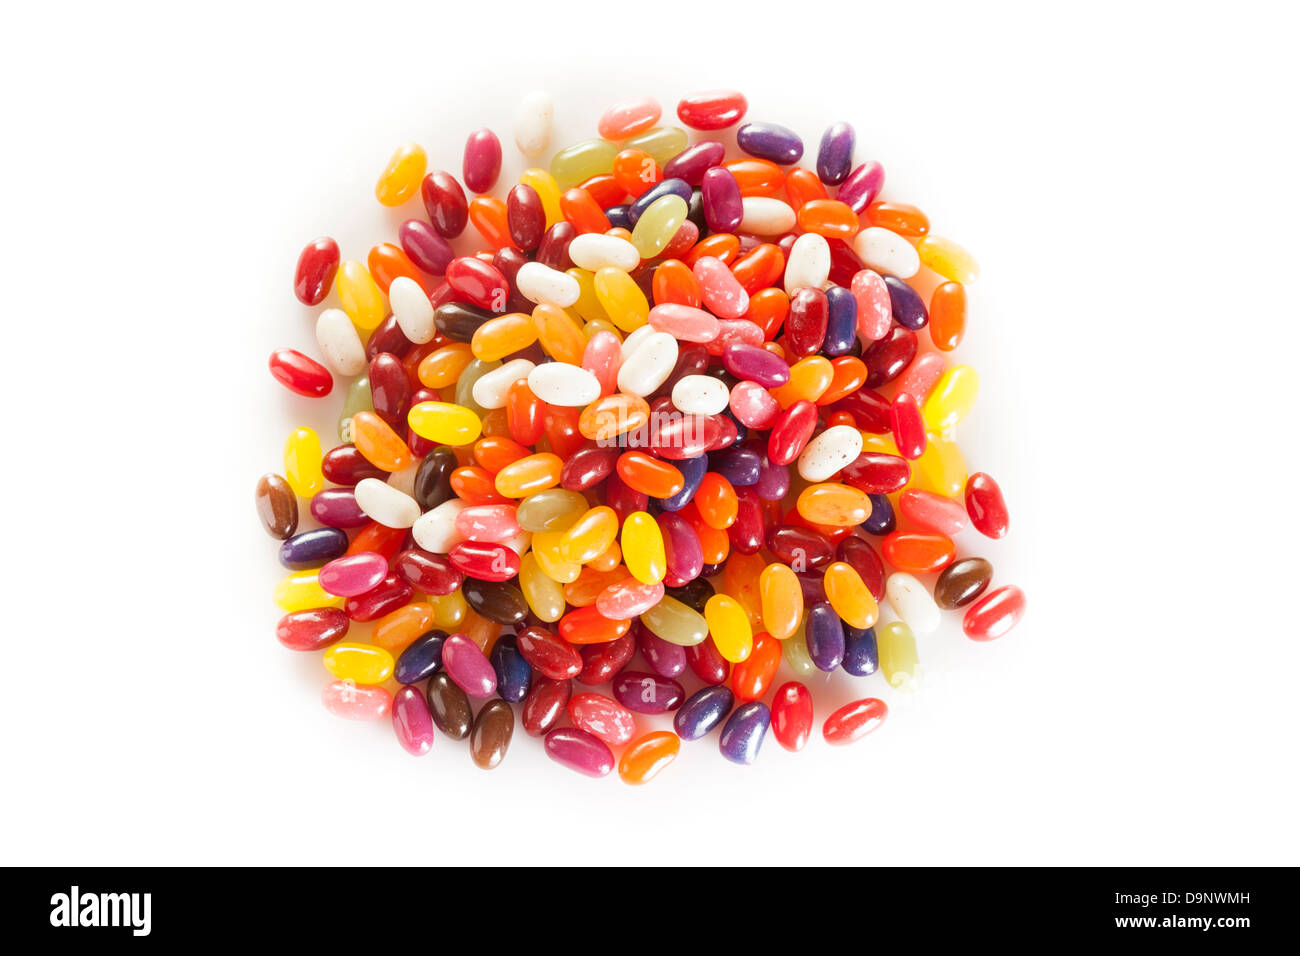 Bunt gemischte fruchtige Jelly Beans auf einem Hintergrund Stockfoto